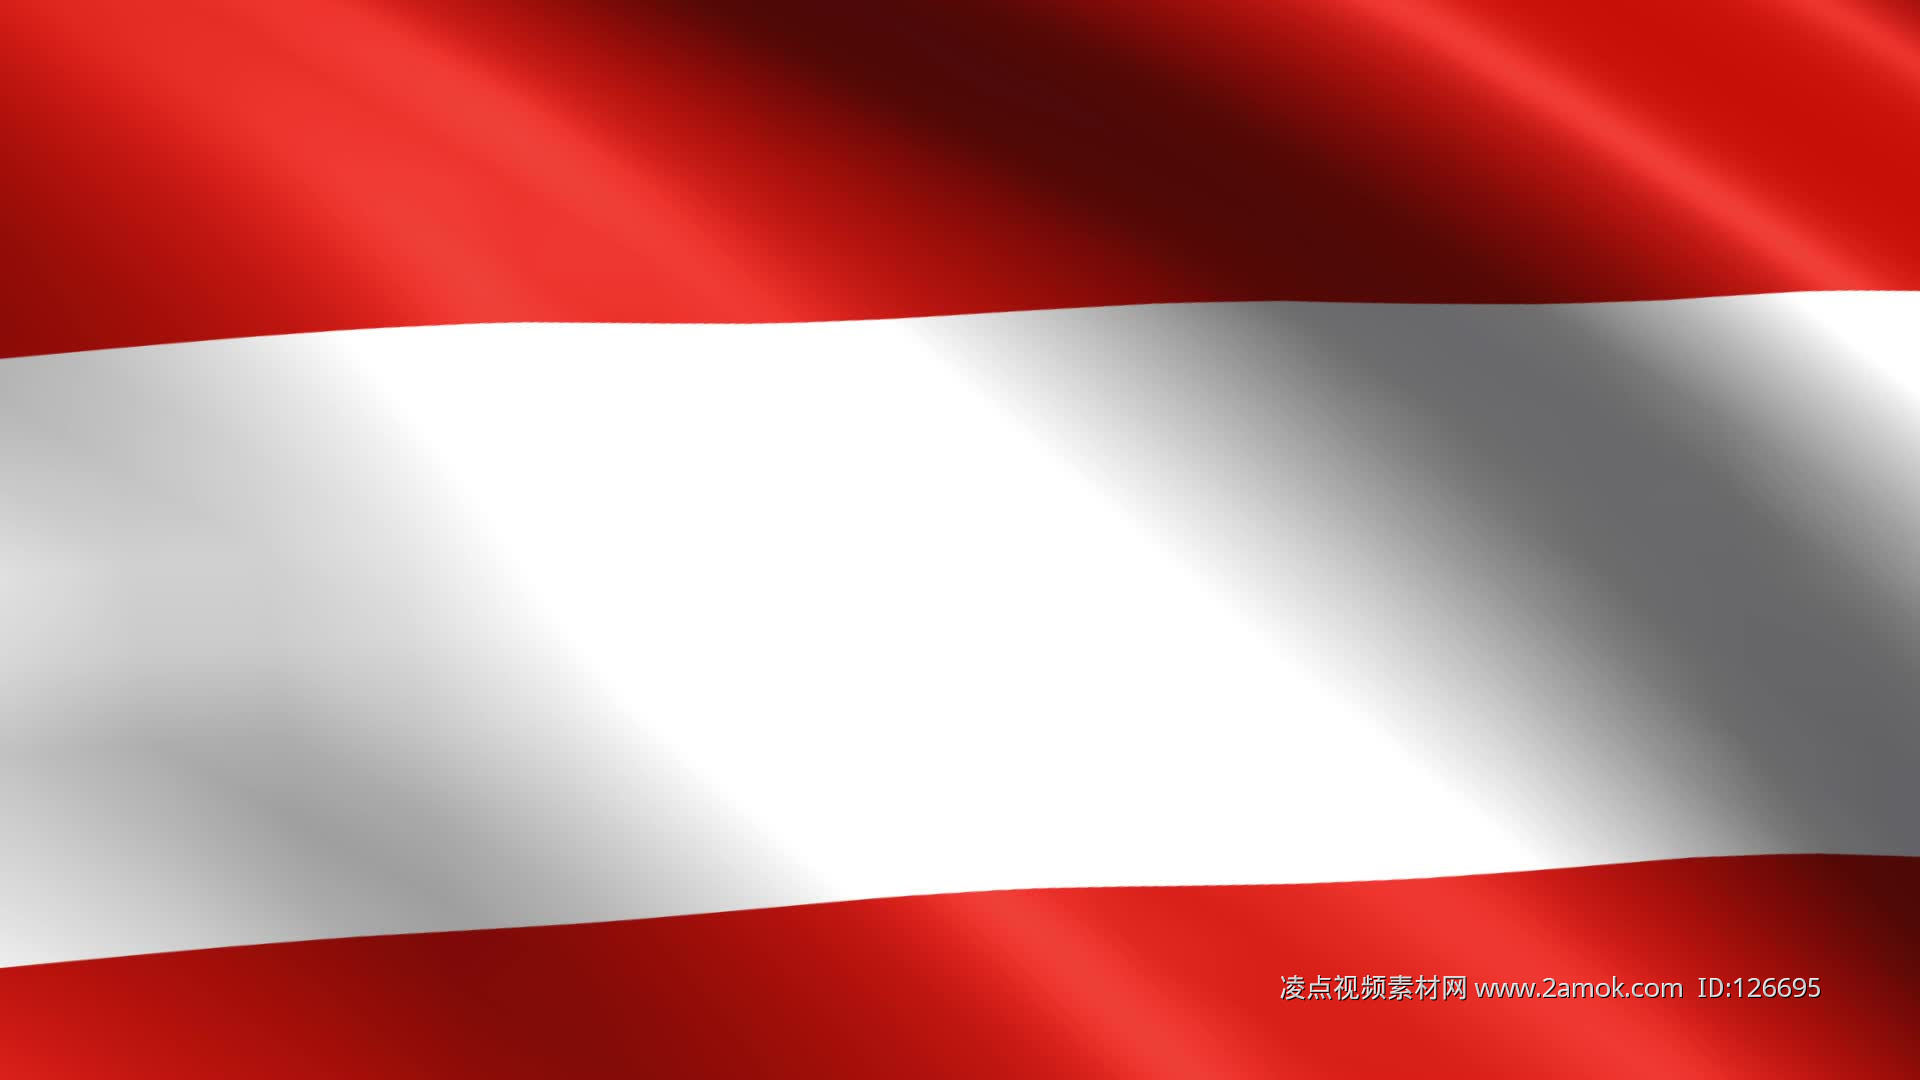 奧地利國旗:來歷,國旗歷史,_中文百科全書